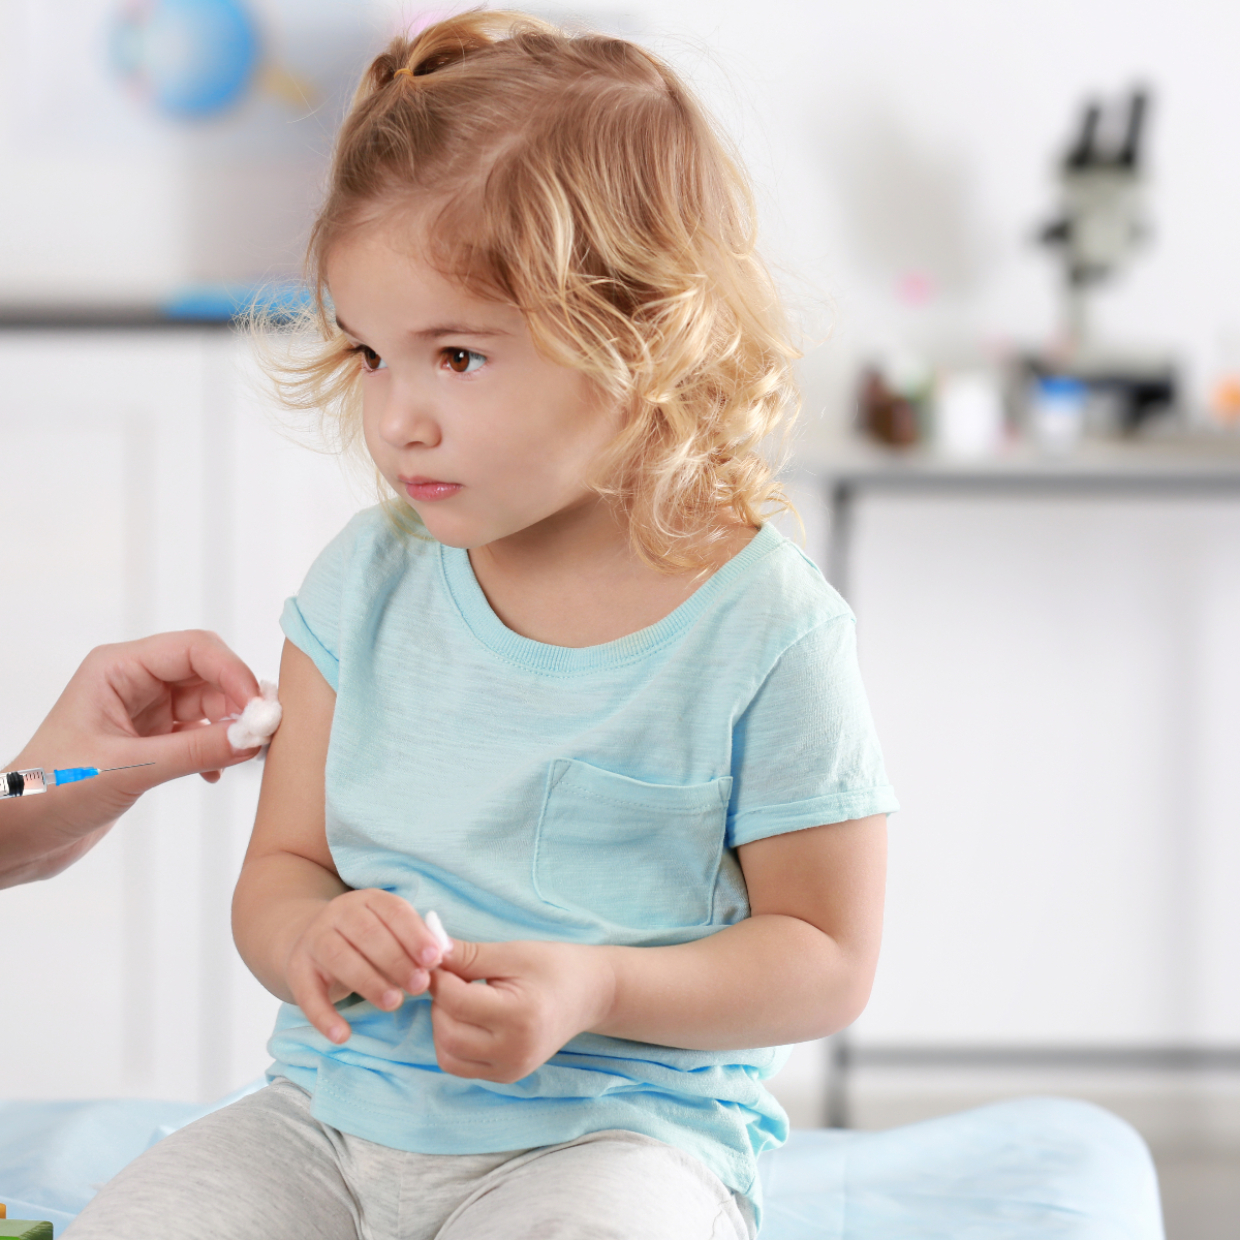  小児科医からのメッセージ「病院に行くのを躊躇しても予防接種を延期しないで！」 